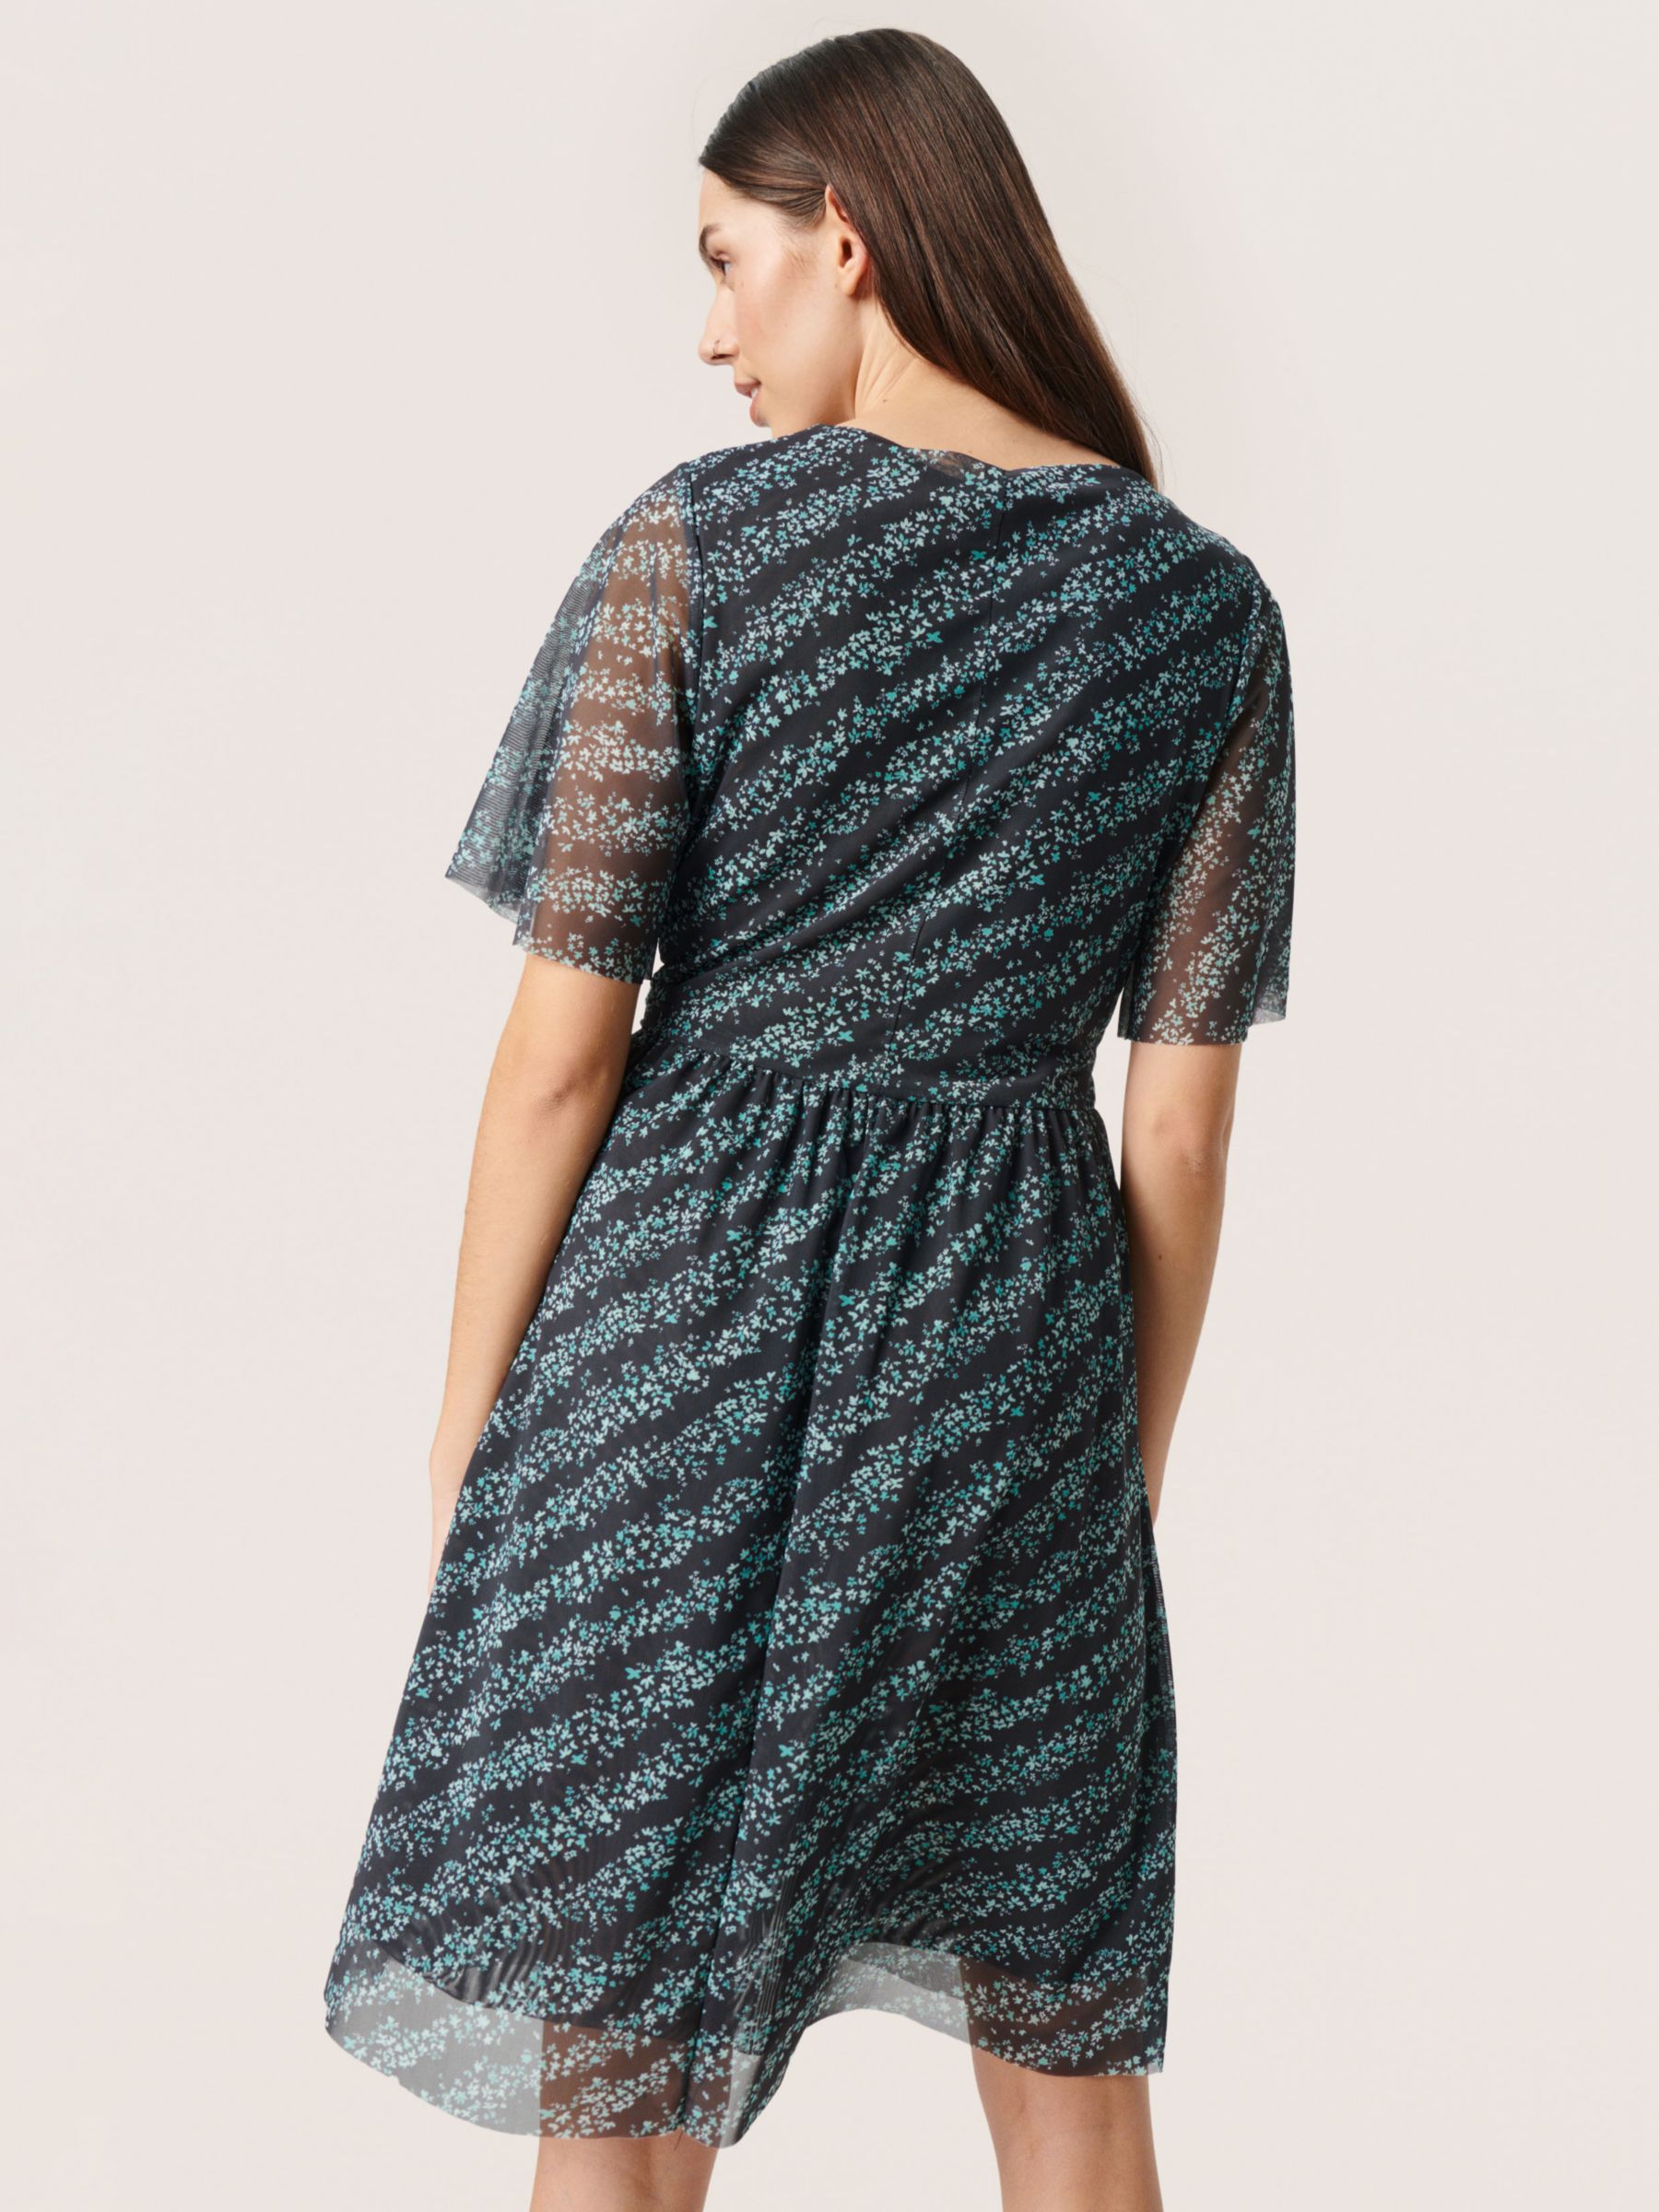 Buy Soaked In Luxury Demara Stripe Dress, Black Online at johnlewis.com